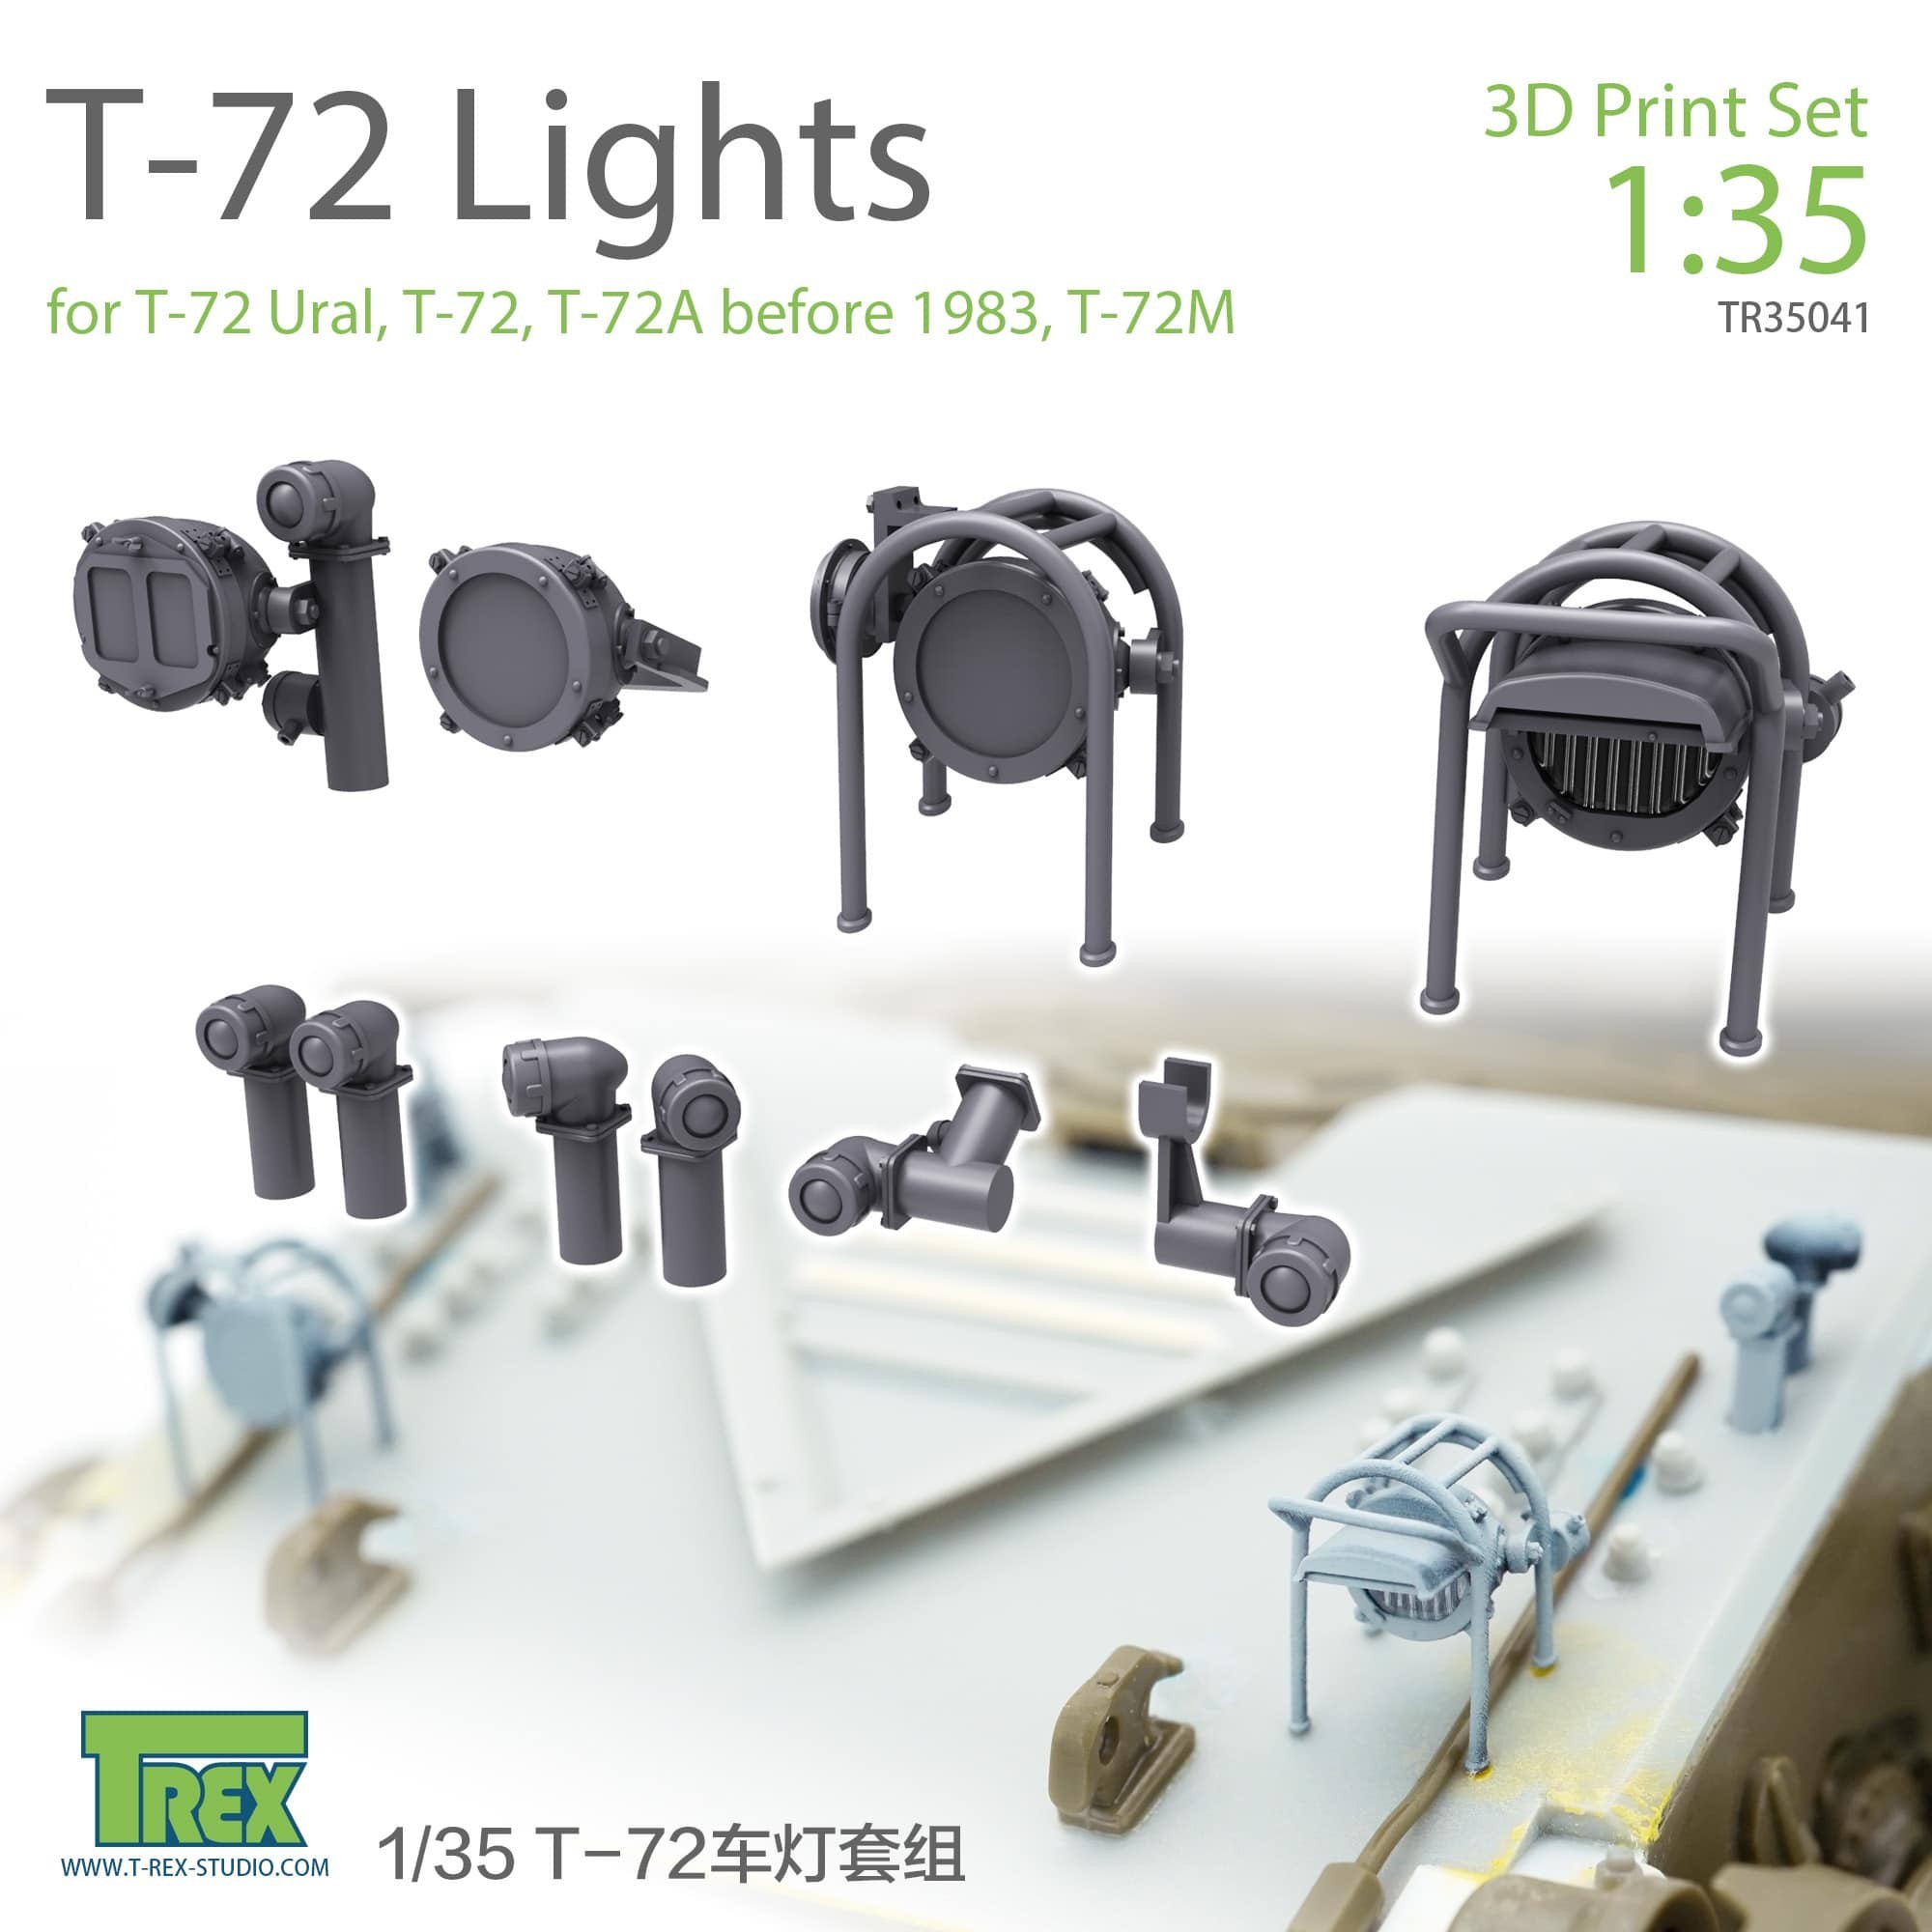 #35041 T-72 Lights set